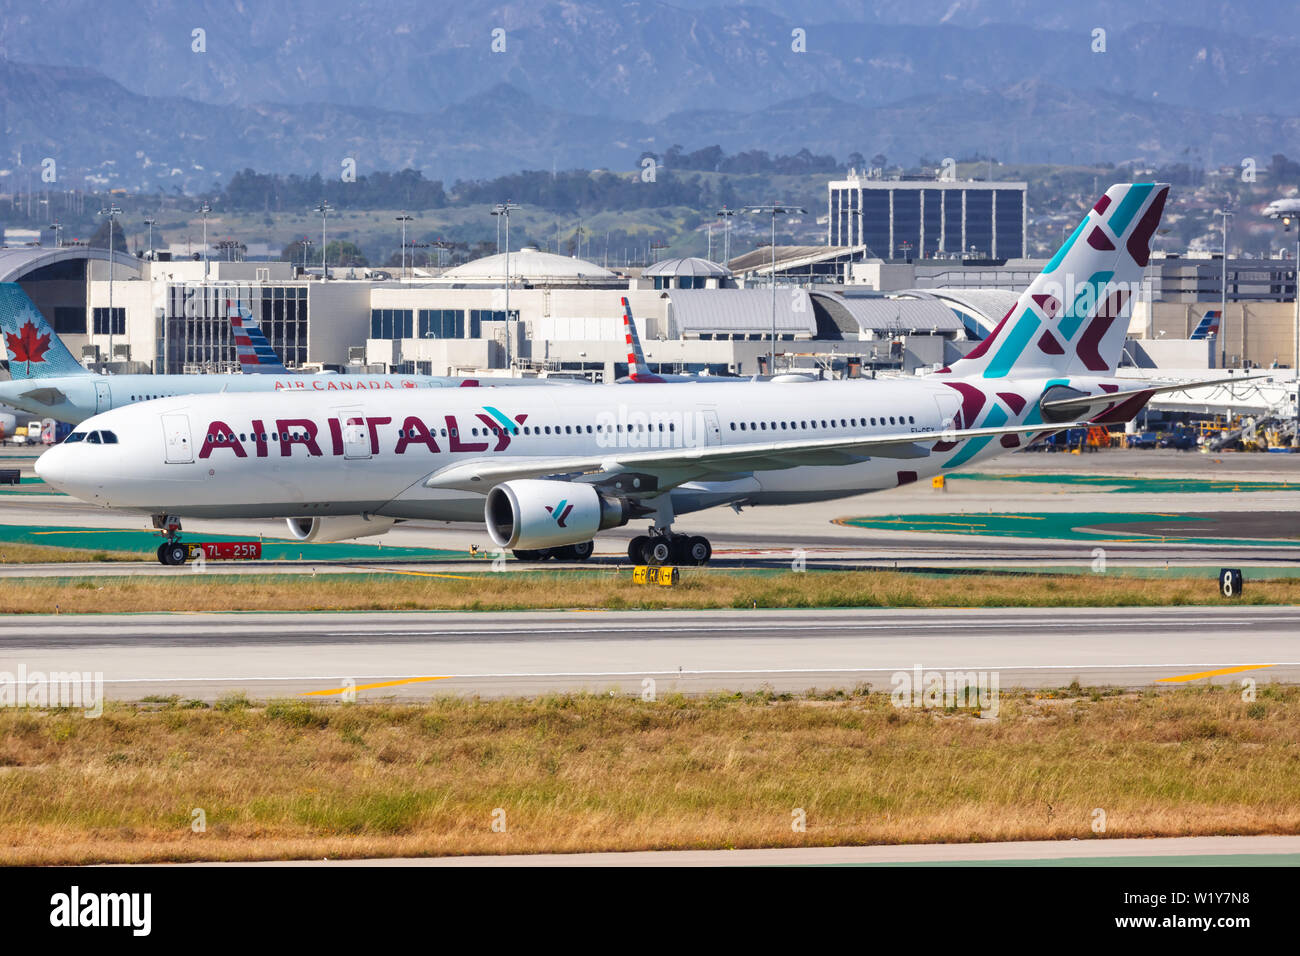 Los Angeles, Kalifornien - 12. April 2019: Air Italy Airbus A330-200 Flugzeug am Flughafen Los Angeles (LAX) in den Vereinigten Staaten. Stockfoto